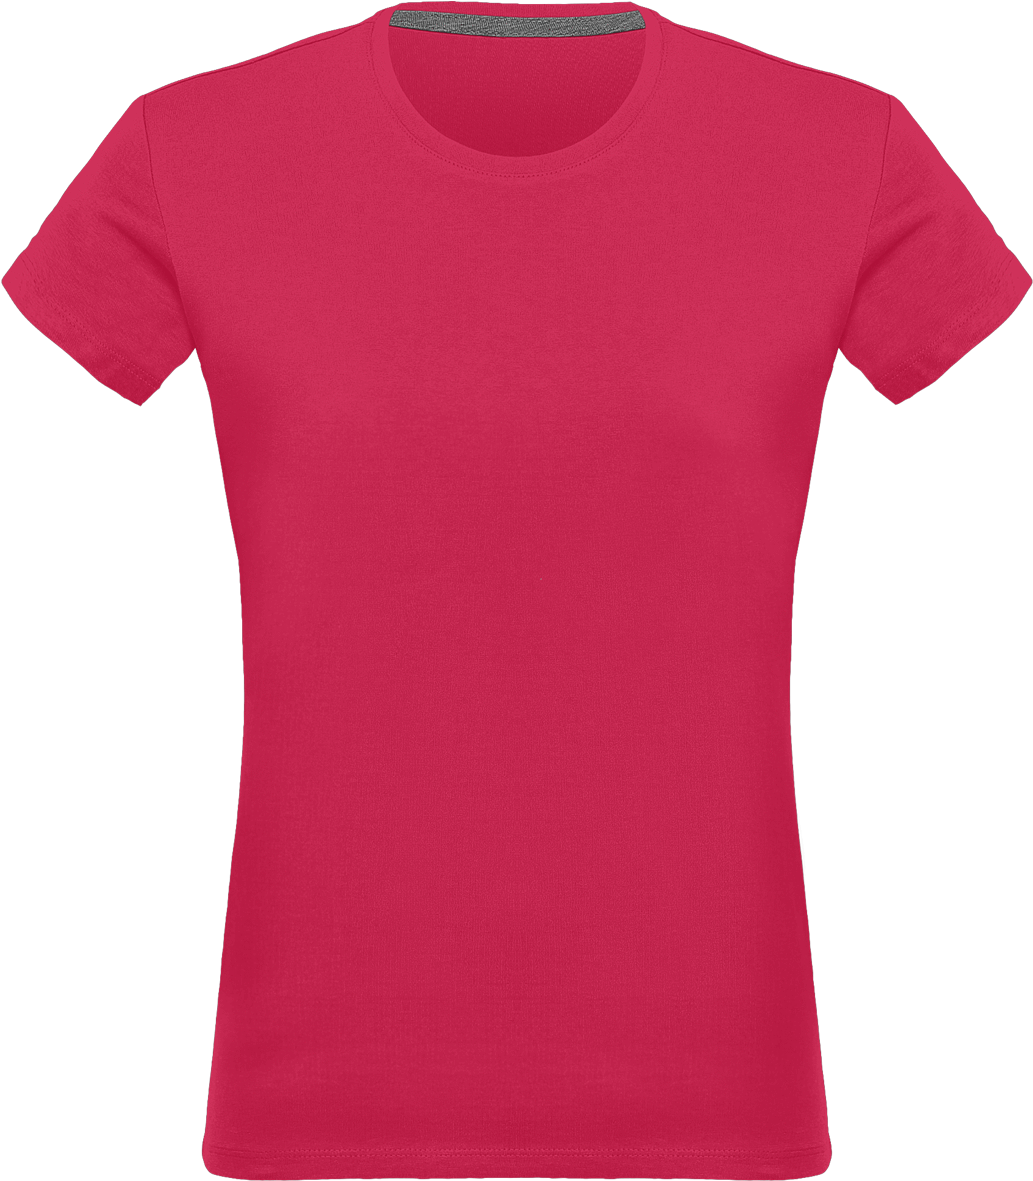 Blank T-shirt Women - T Shirt (1032x1200), Png Download